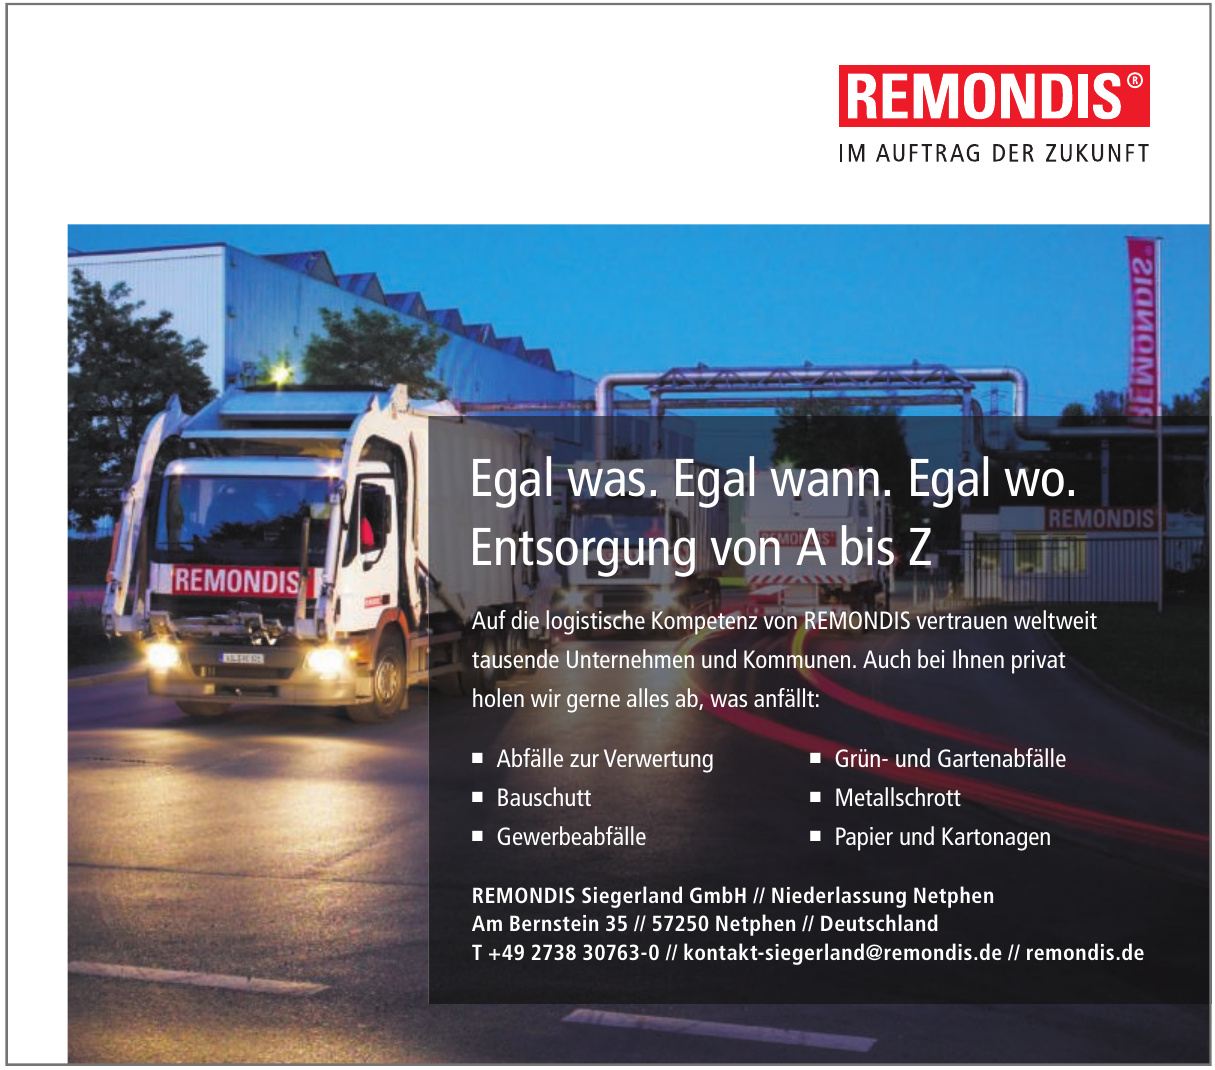 REMONDIS Siegerland GmbH